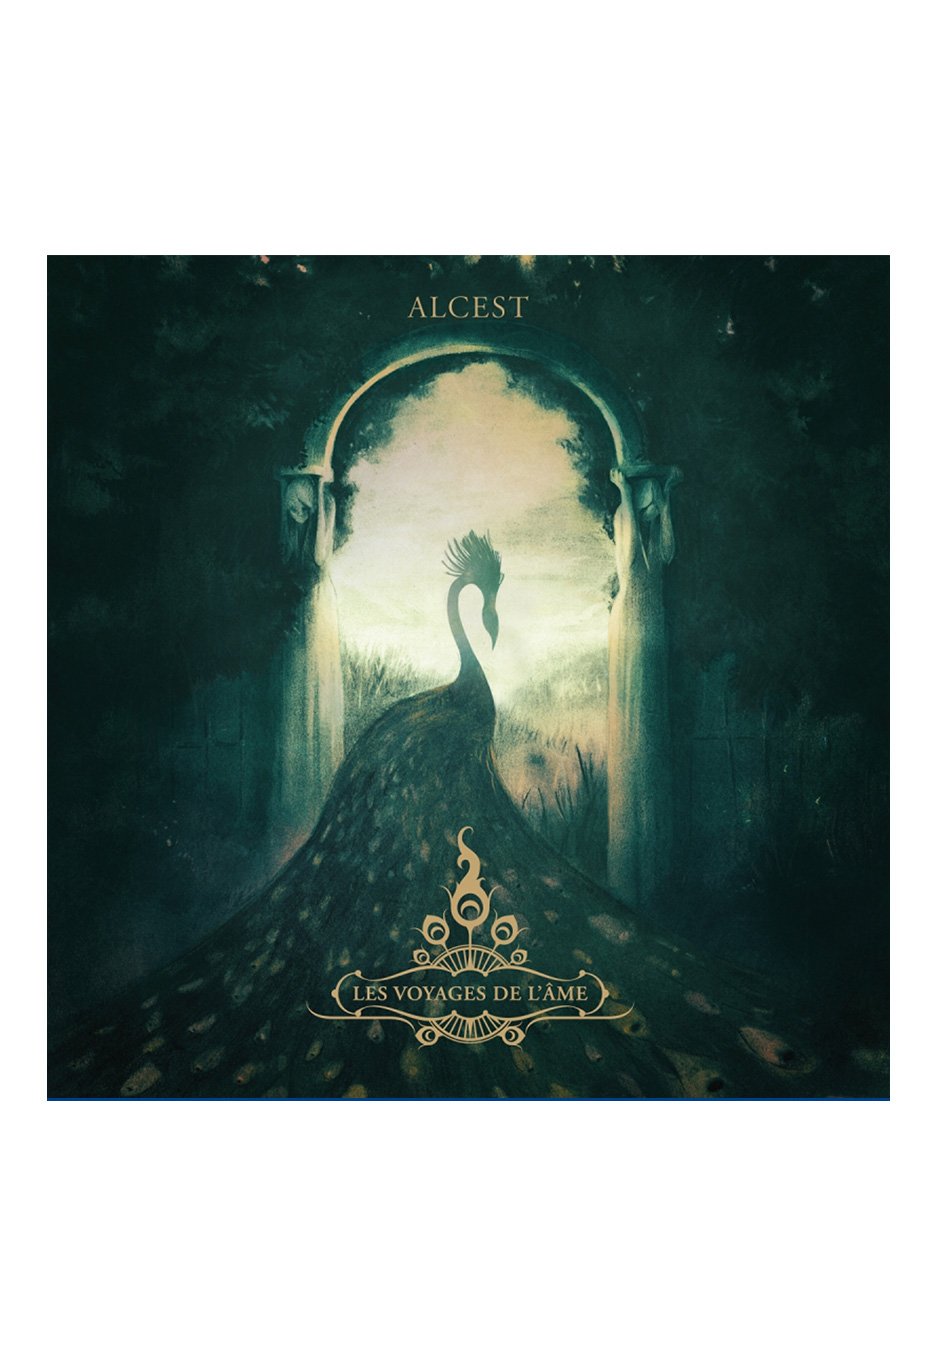 Alcest - Les Voyages De L'Ame (10th Anniversary Edition) - Picture Vinyl